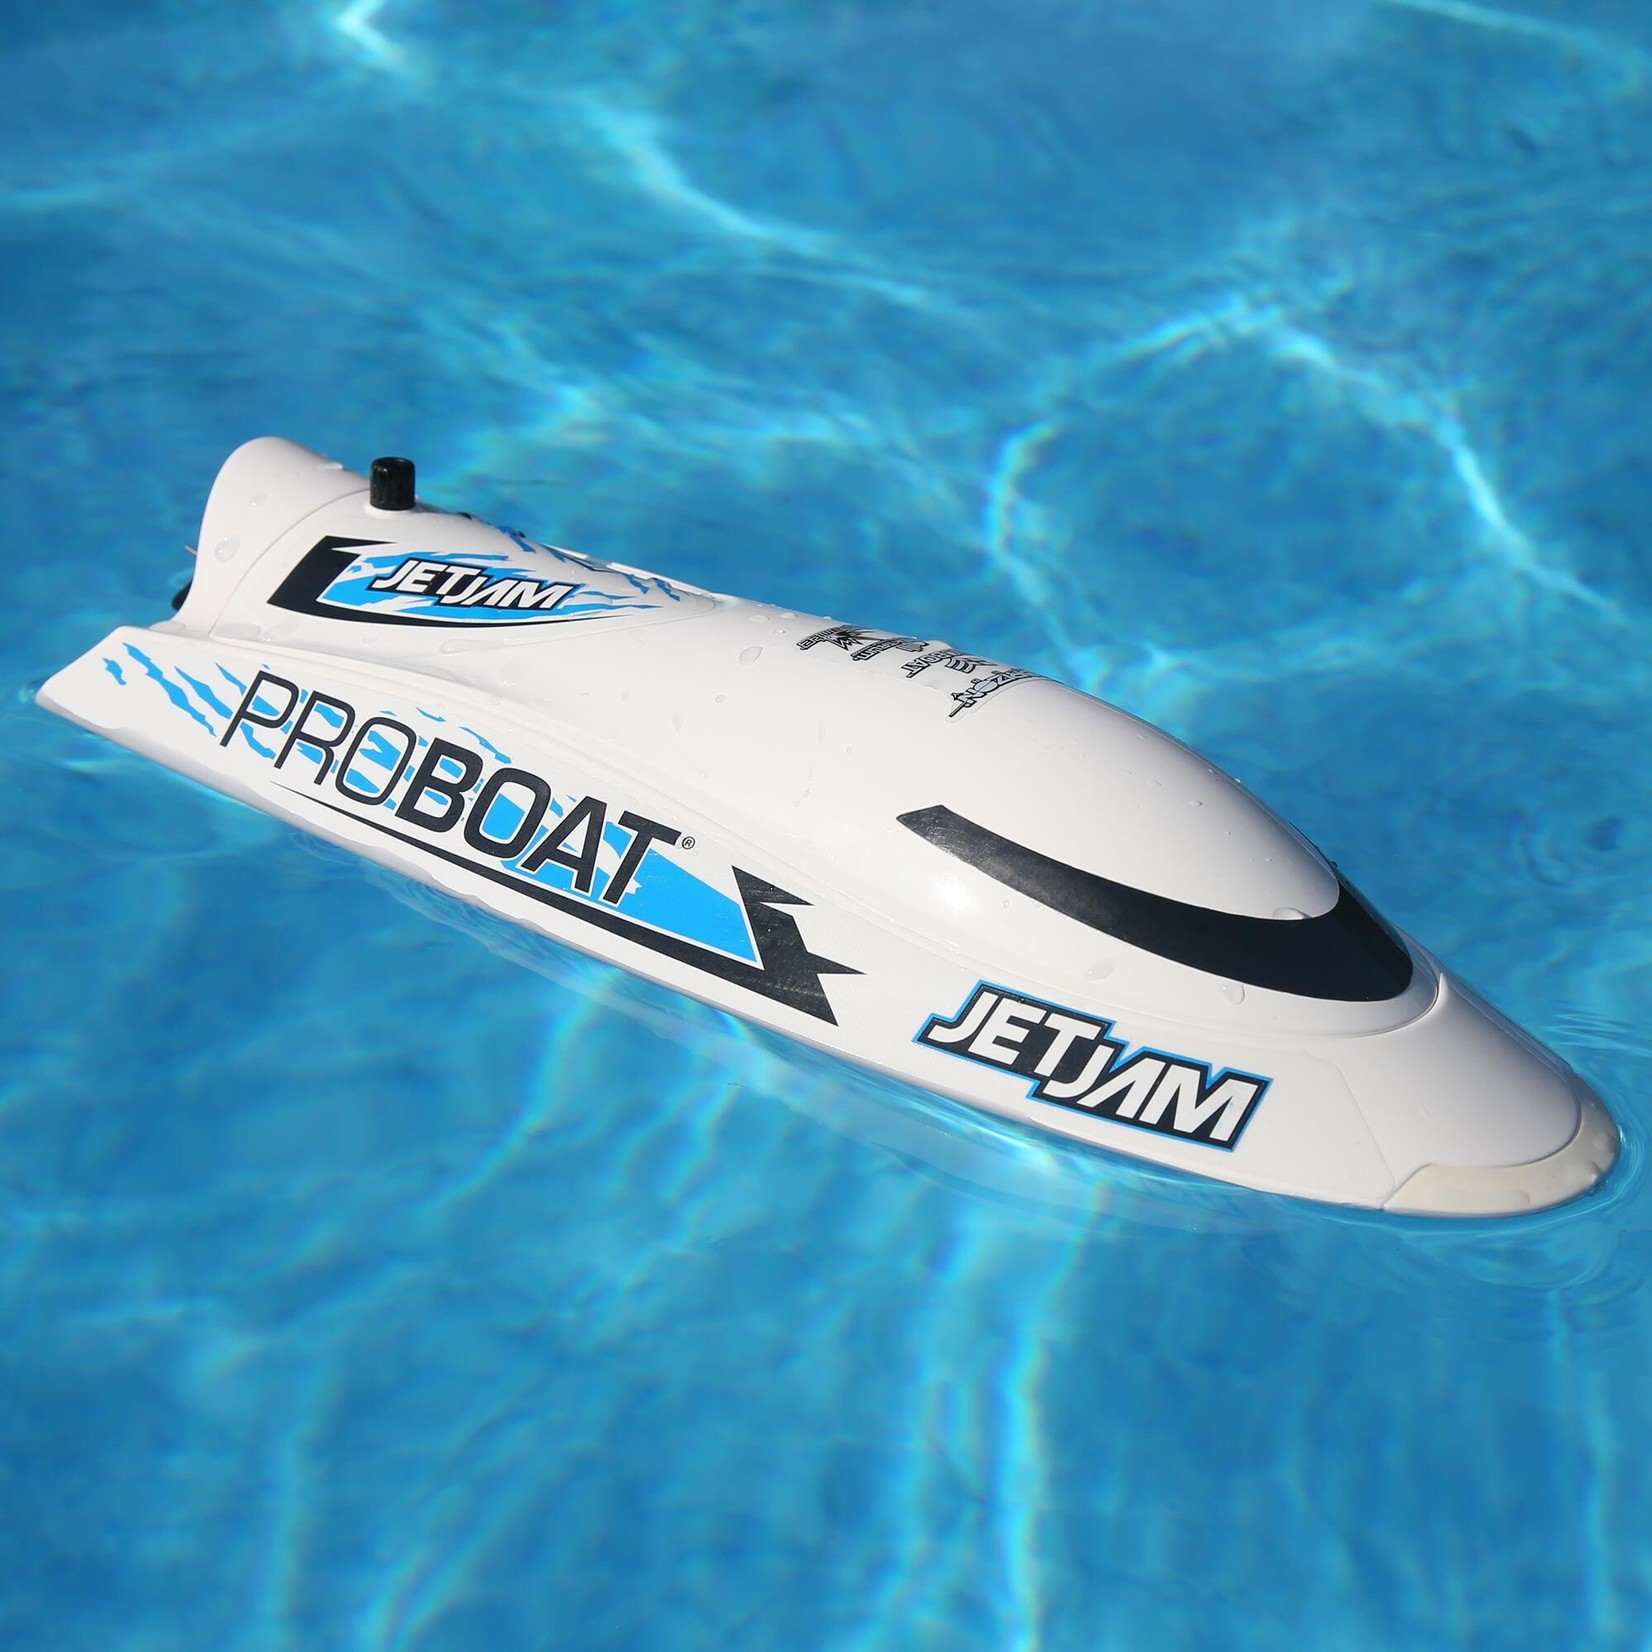 ProBoat Jet Jam V2 12" Self-Righting Pool Racer Brushed RTR, White